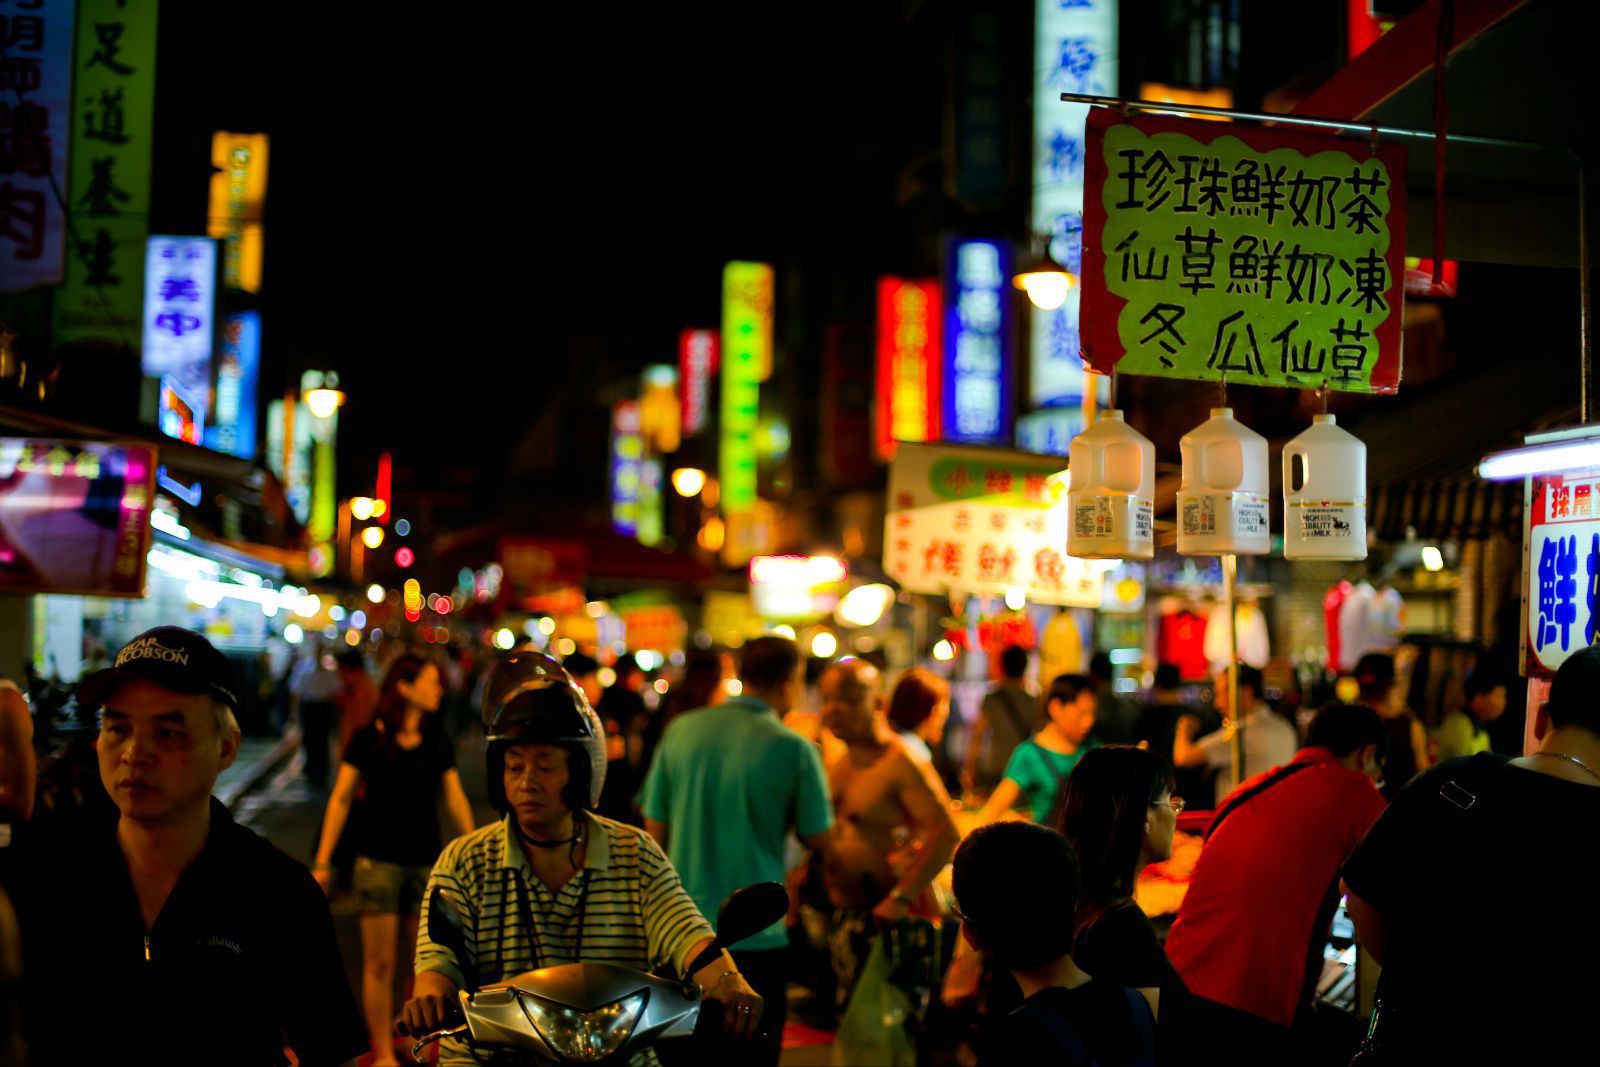 其实华西街夜市只是一个大的统称,还包括旁边广州街和桂林路的小店